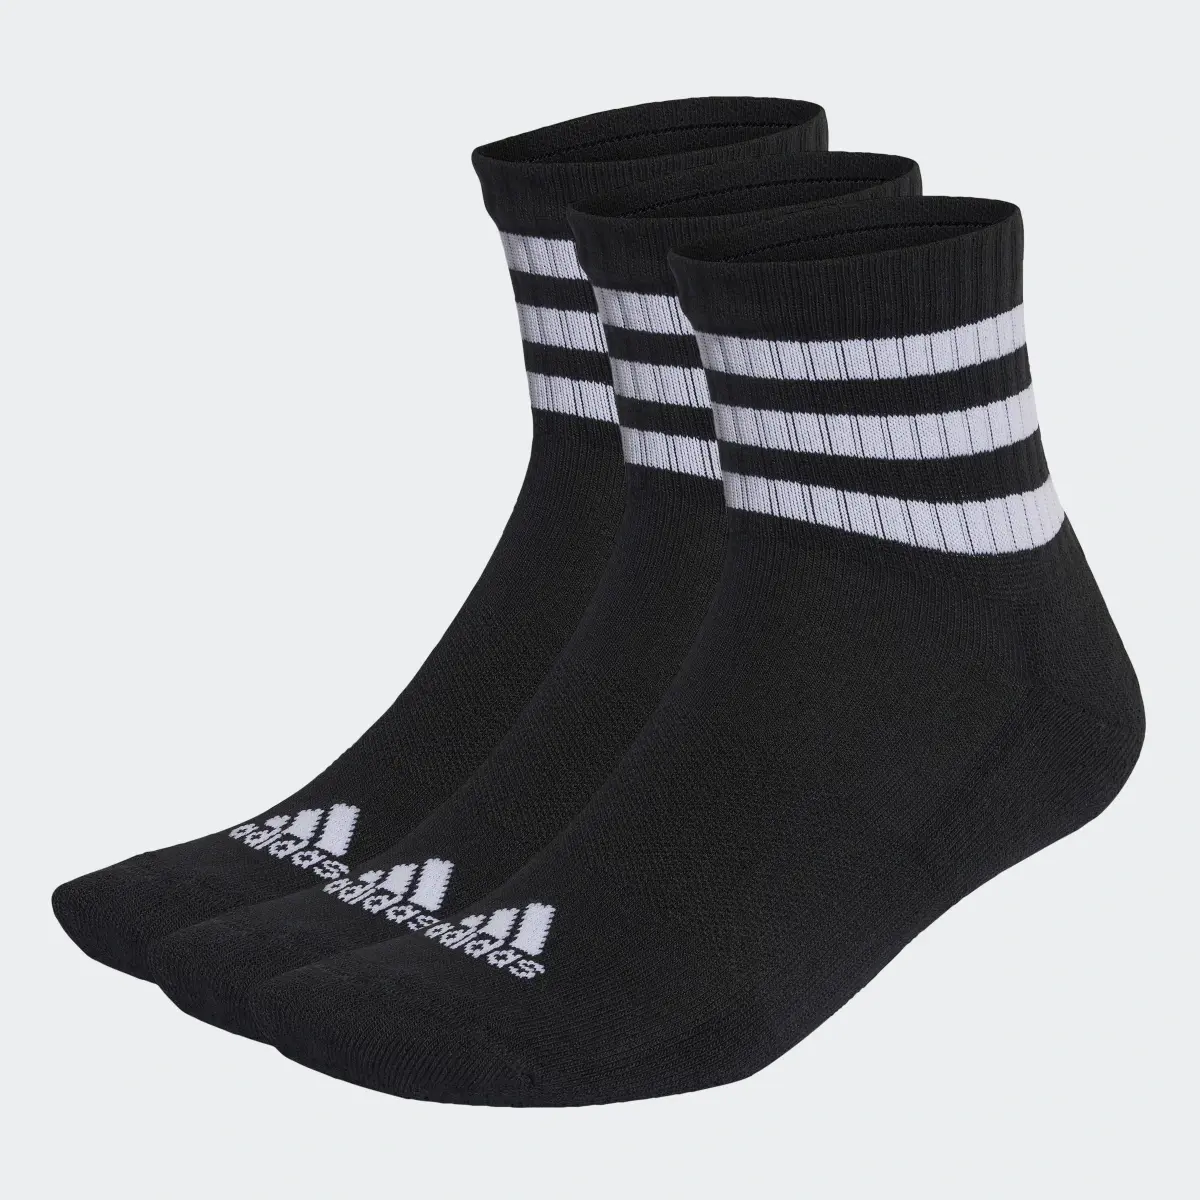 Adidas 3-Stripes Sportswear Yastıklamalı Yarım Bilekli Çorap - 3 Çift. 2